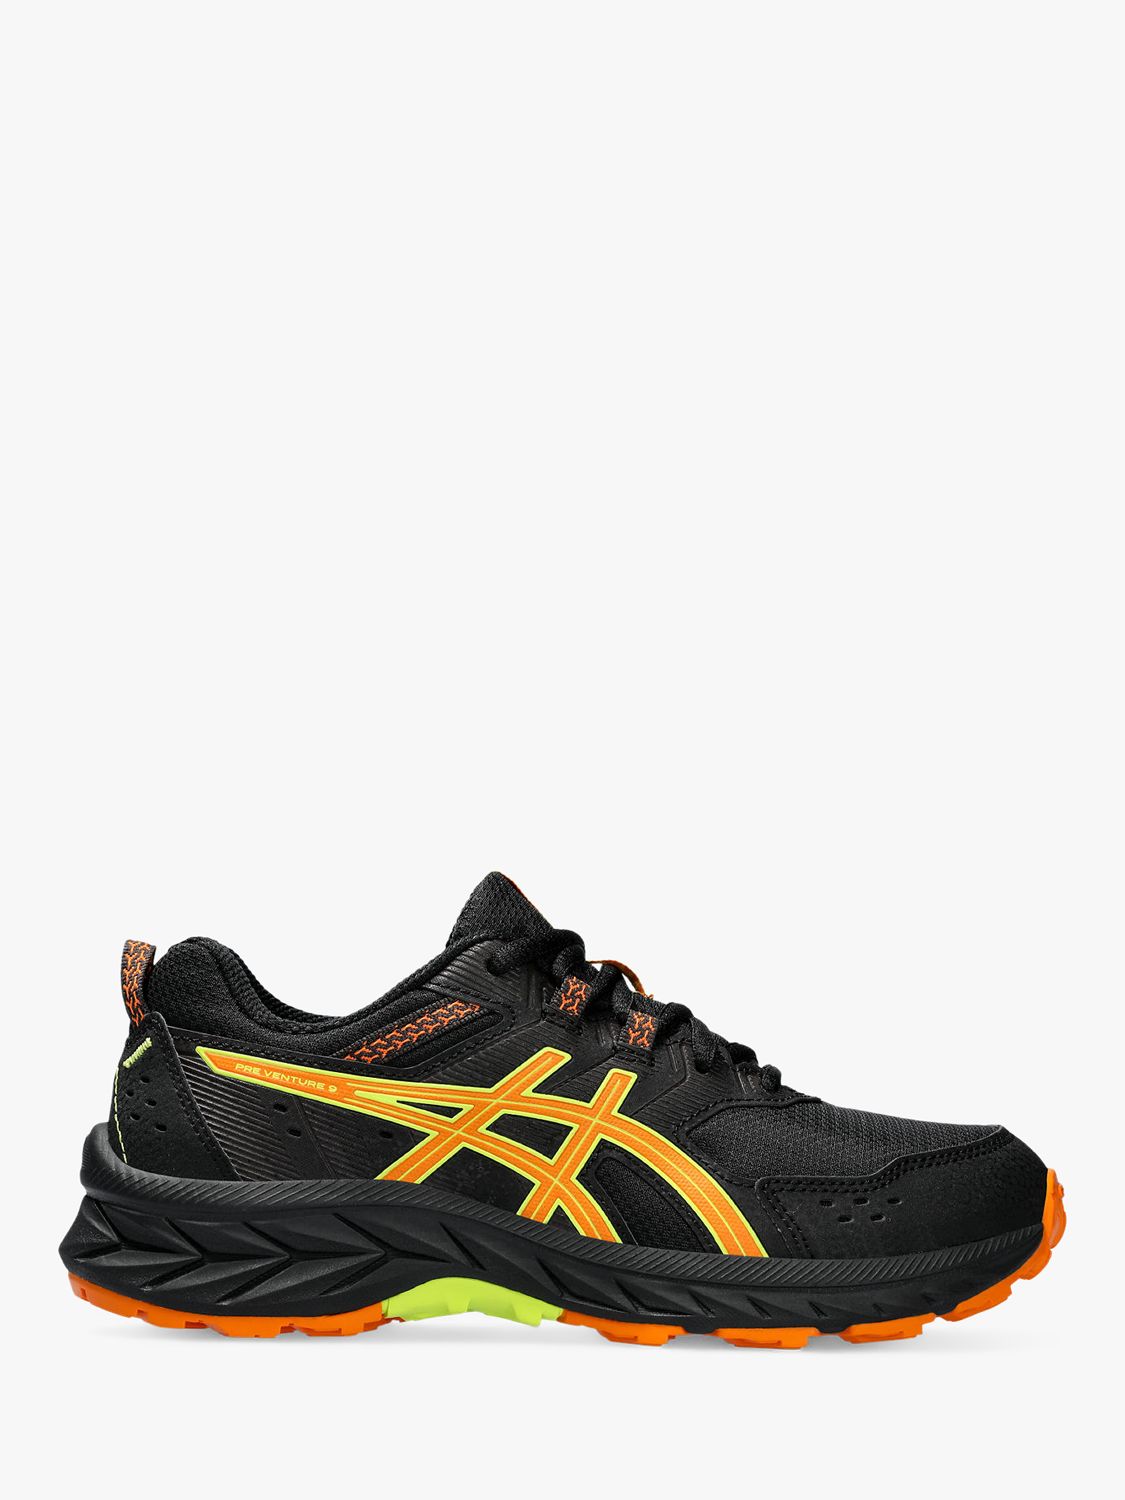 ASICS Kids' GEL-VENTURE 9 Running Shoes, Black/orange/yellow at John ...